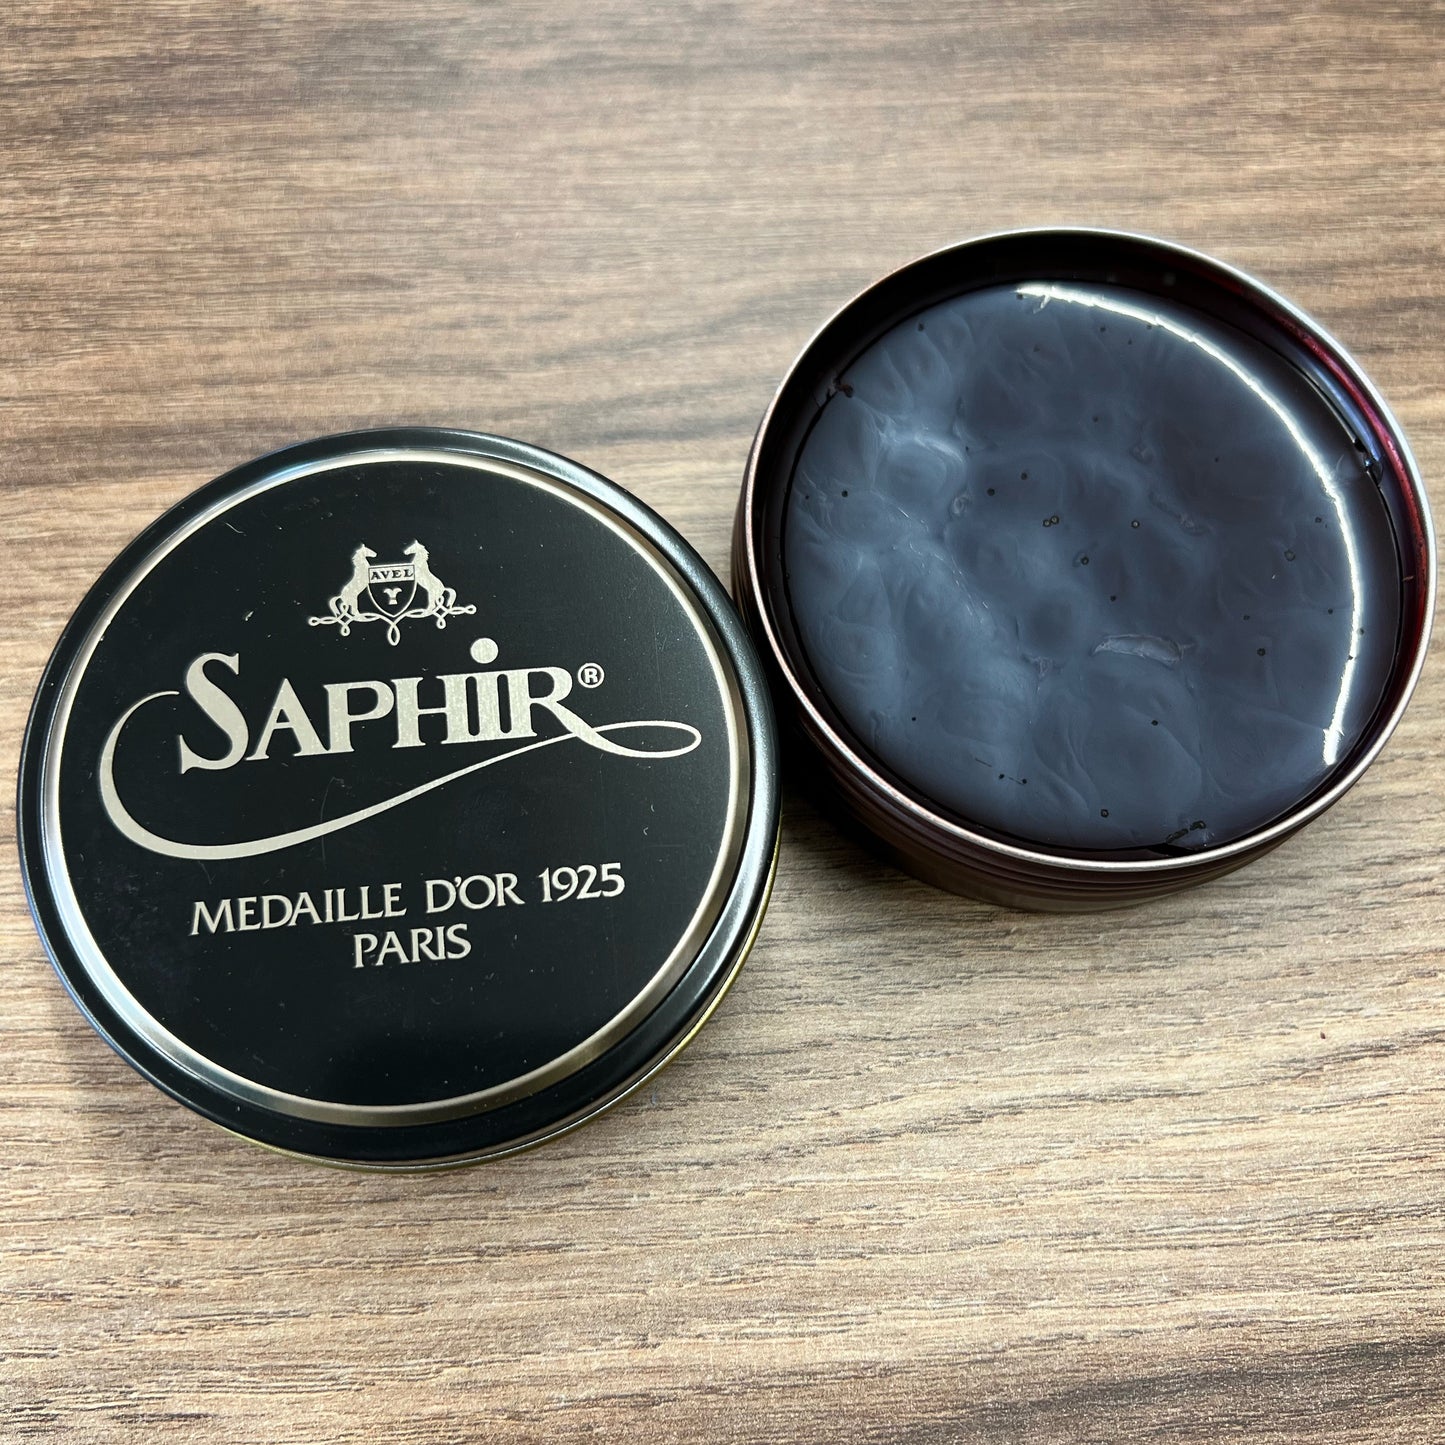 Saphir Medaille D'or Shoe Polish Wax